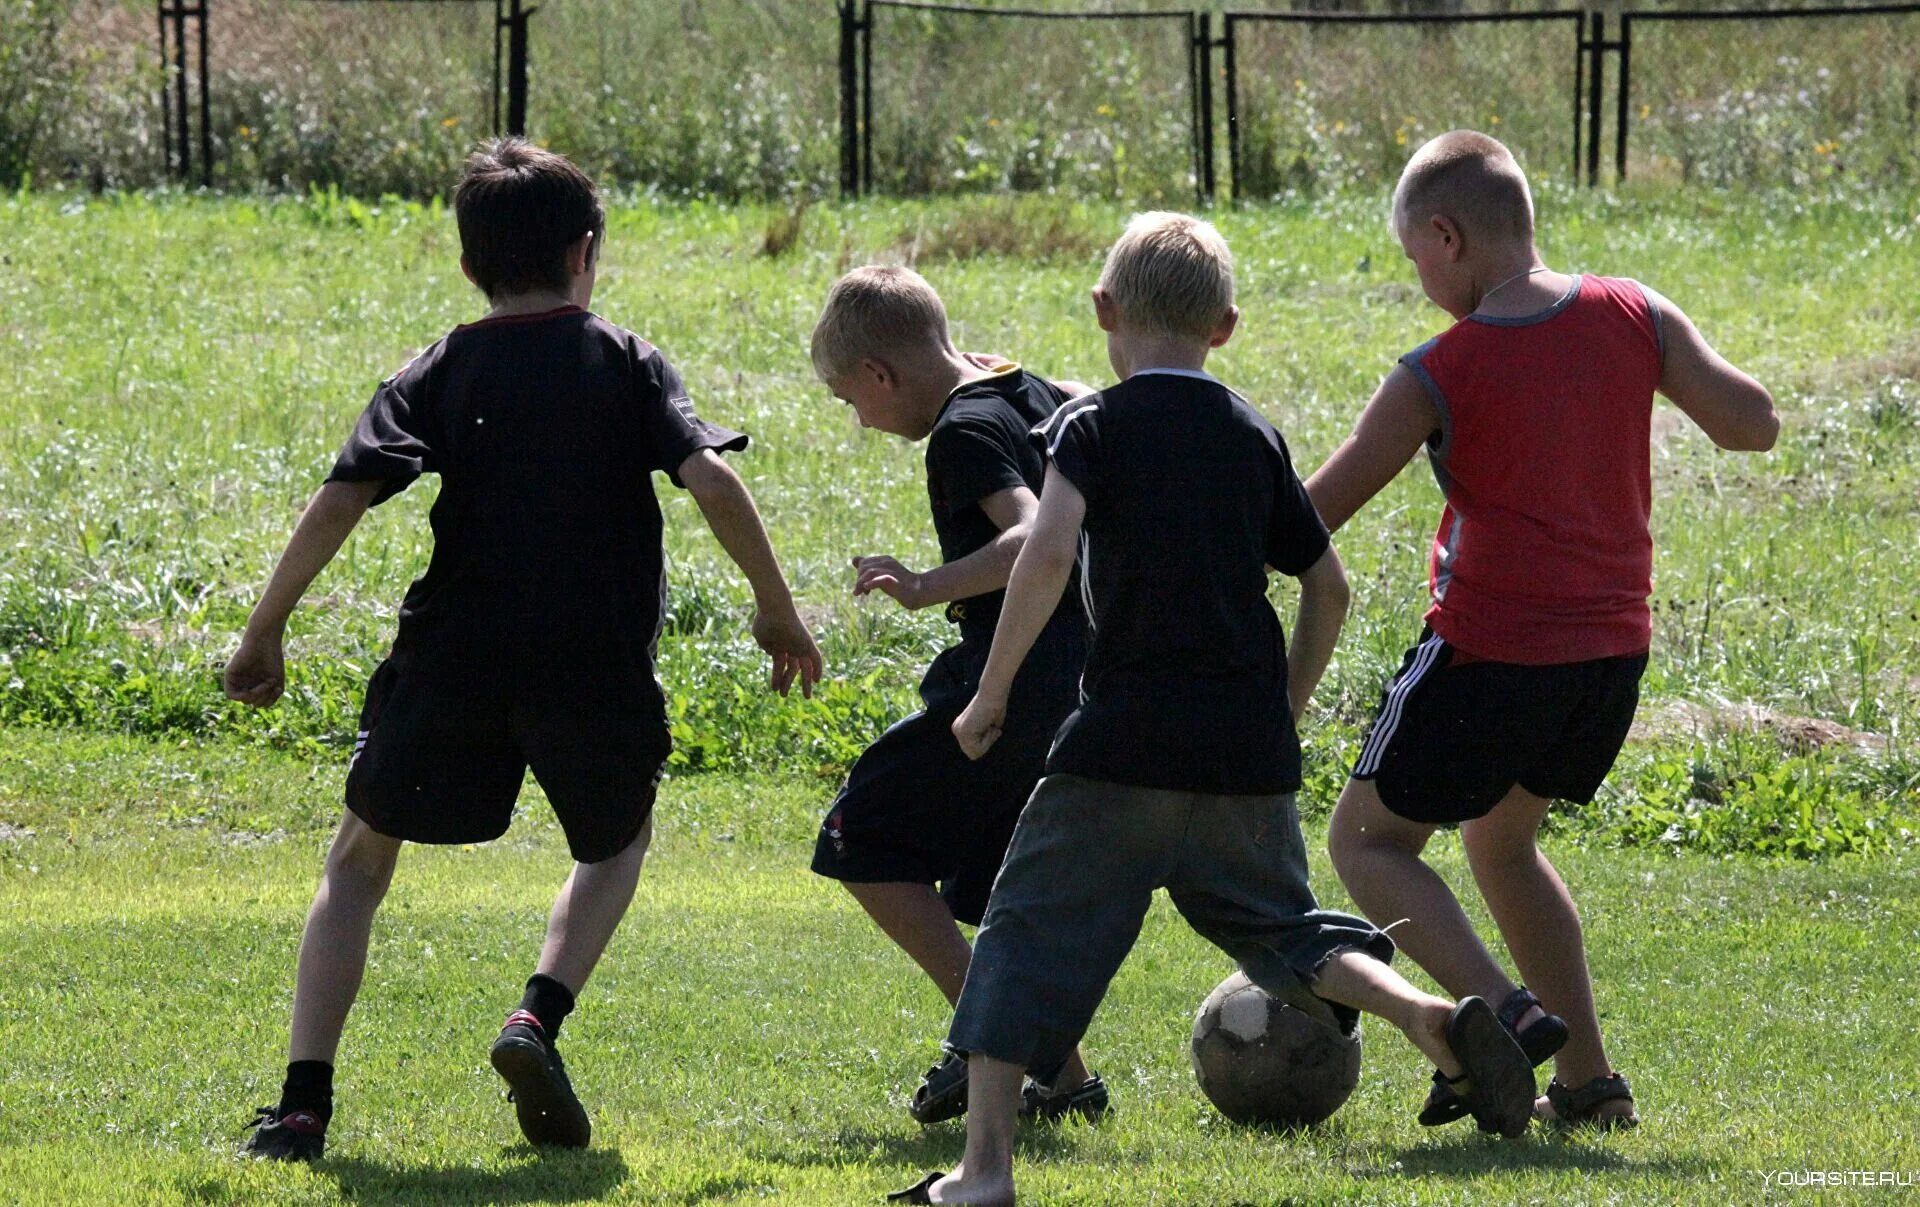 Дети играют в футбол. Дети во дворе. Футбол во дворе. Дети играющие в футбол во дворе. Во дворе ребята играли в футбол